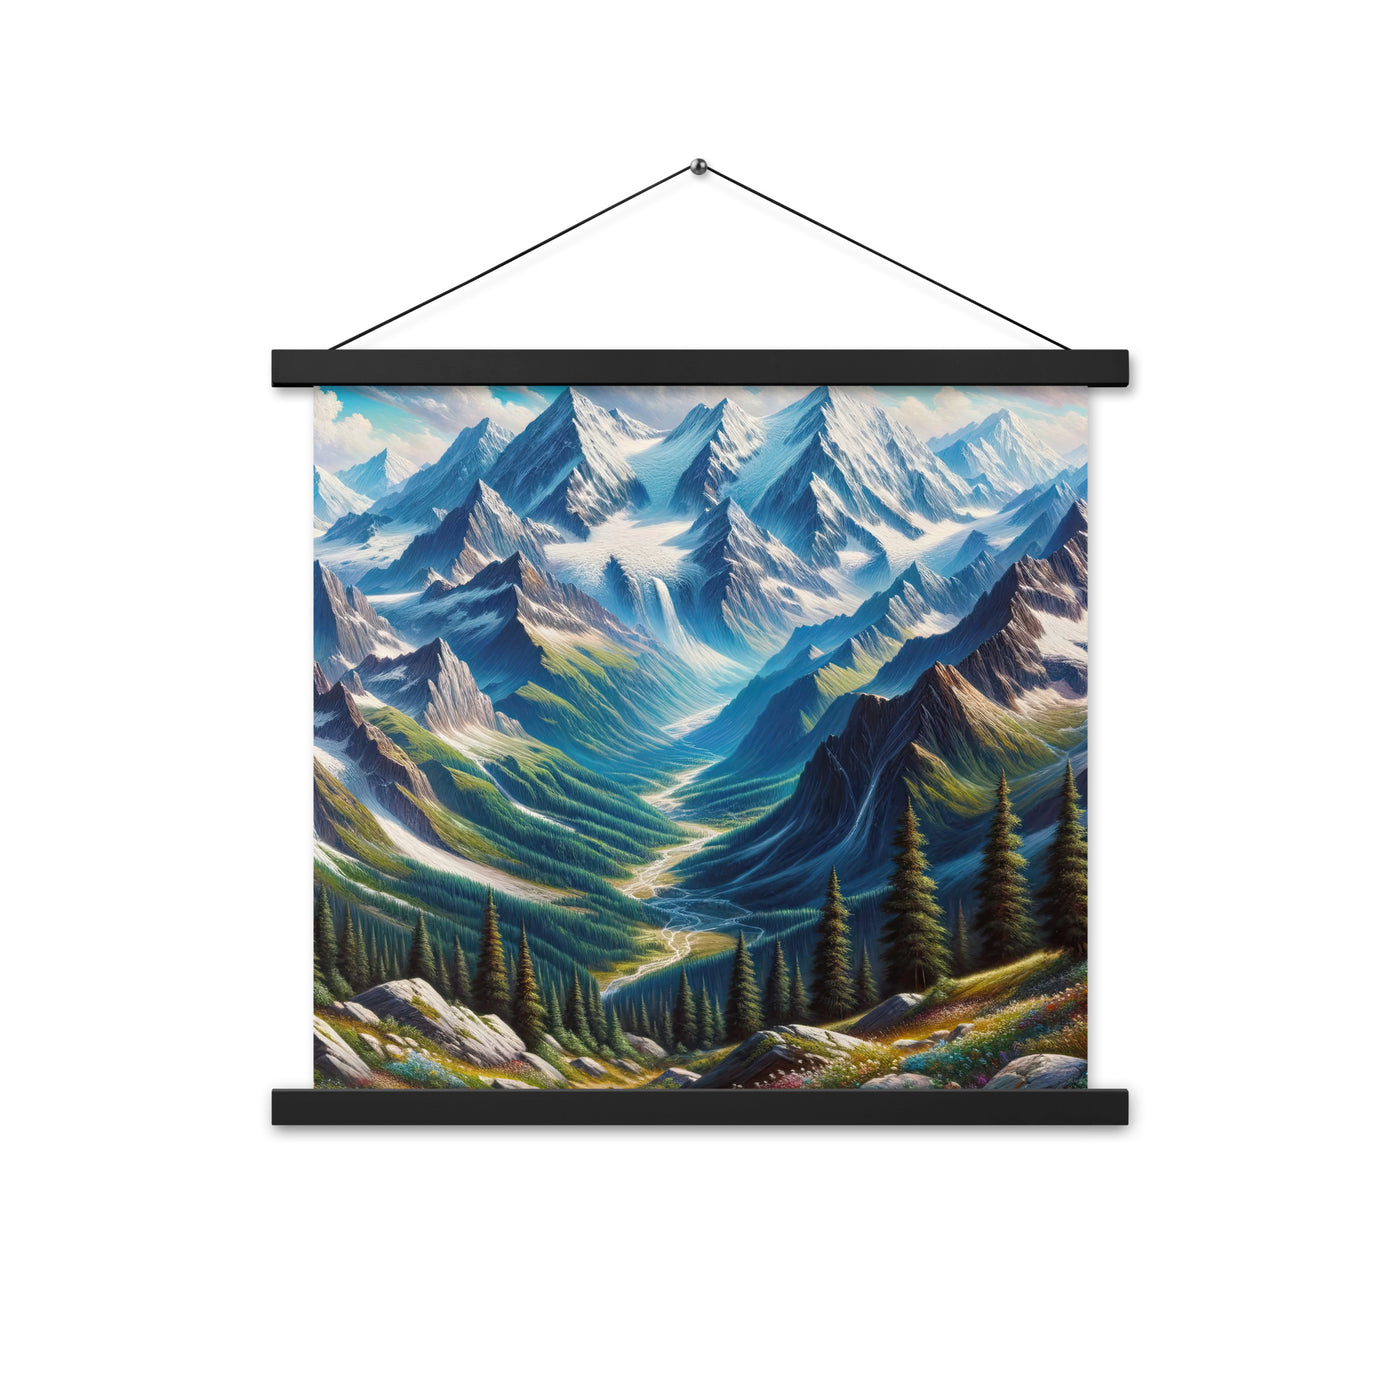 Panorama-Ölgemälde der Alpen mit schneebedeckten Gipfeln und schlängelnden Flusstälern - Premium Poster mit Aufhängung berge xxx yyy zzz 45.7 x 45.7 cm